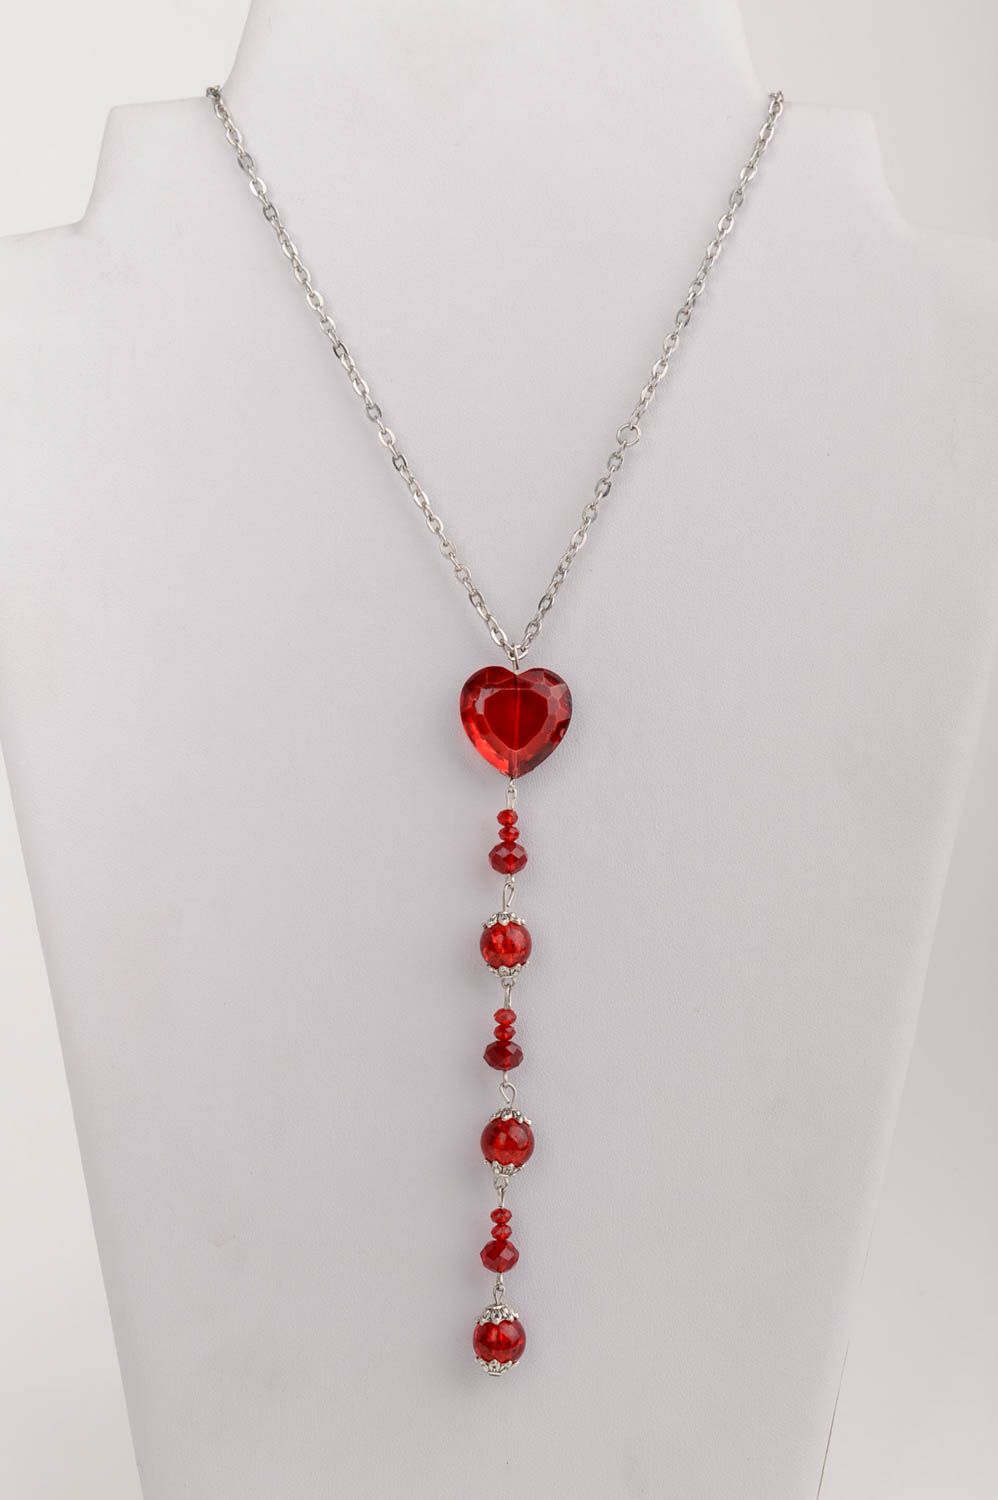 Joli pendentif en cristal tchèque long sur chaînette fait main avec cœur rouge photo 1